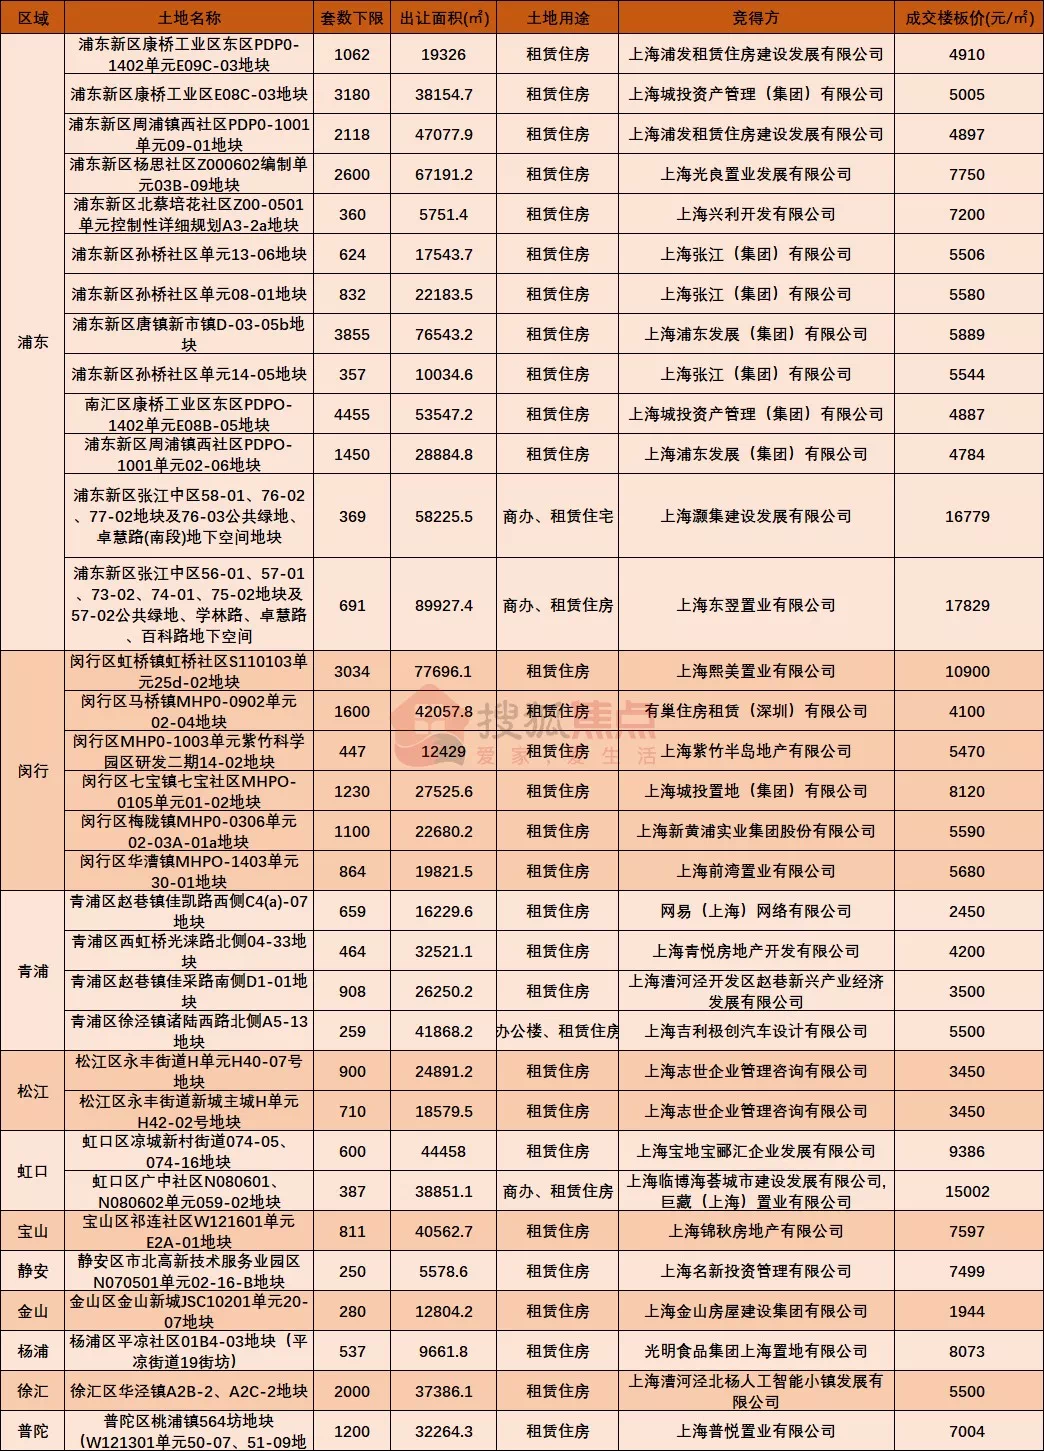 上海楼市调控政策微调2月28日被否(图)